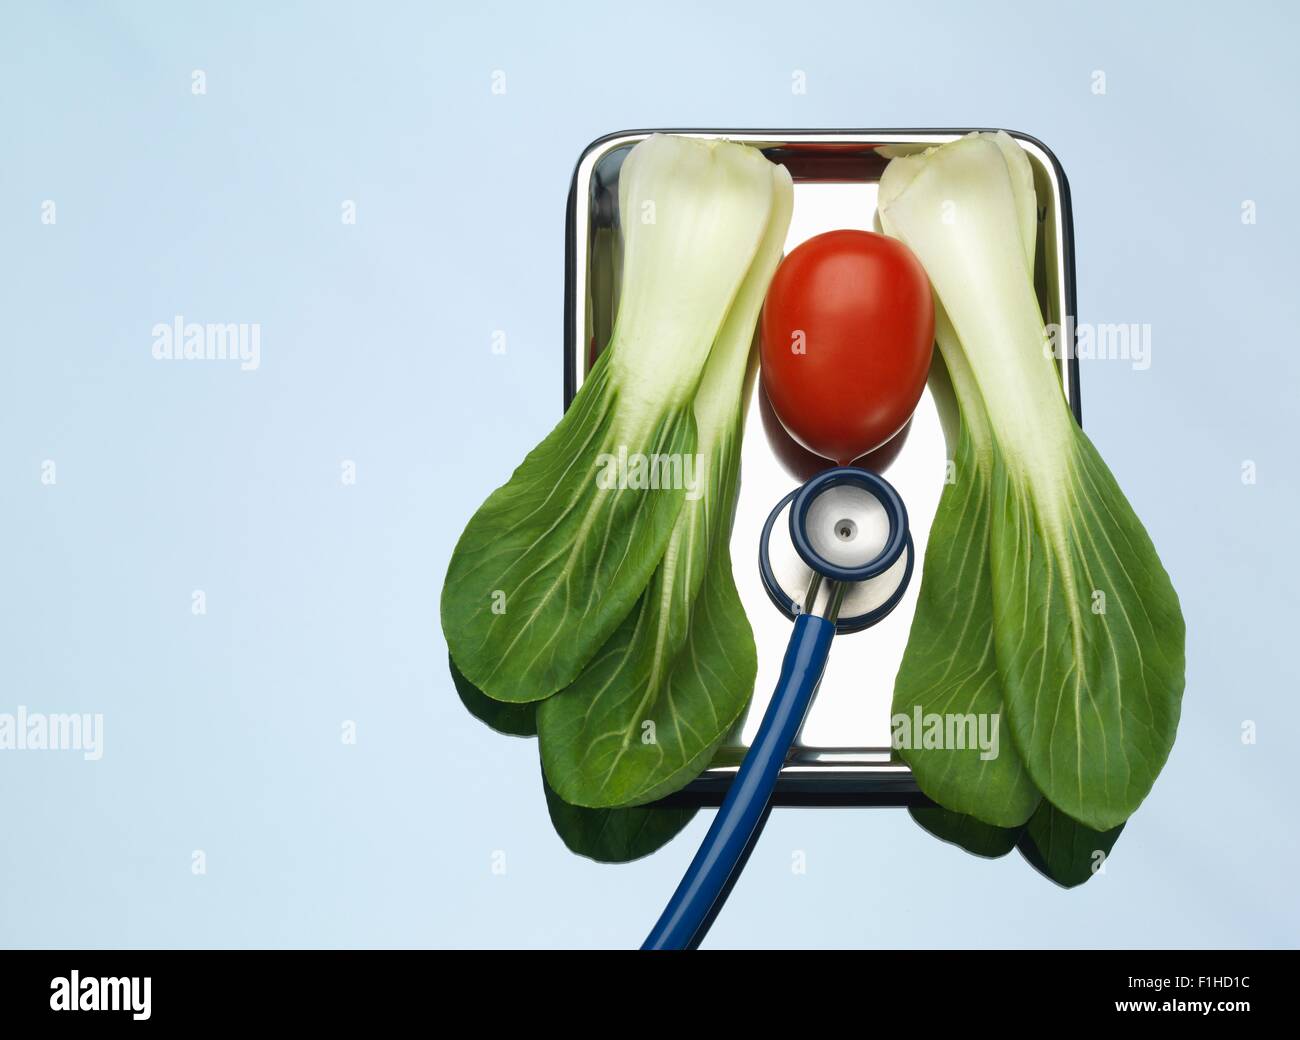 Stethoskop auf medizinische Fach mit einer Tomate und Pak Choi zur Veranschaulichung gesunde Lungen und Herz Stockfoto